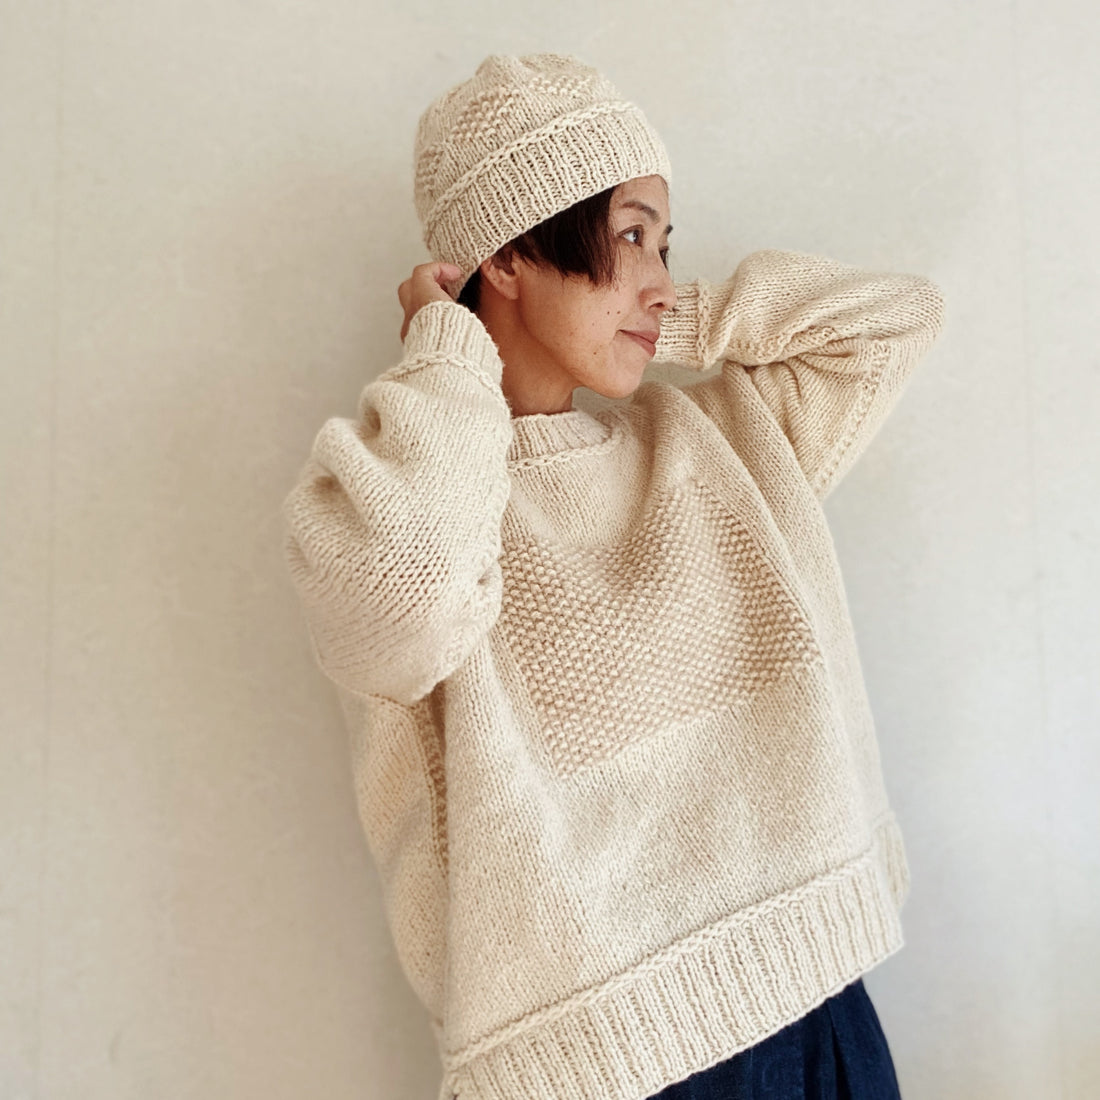 Rie Kouvive - To Draw Sweater kit de laine